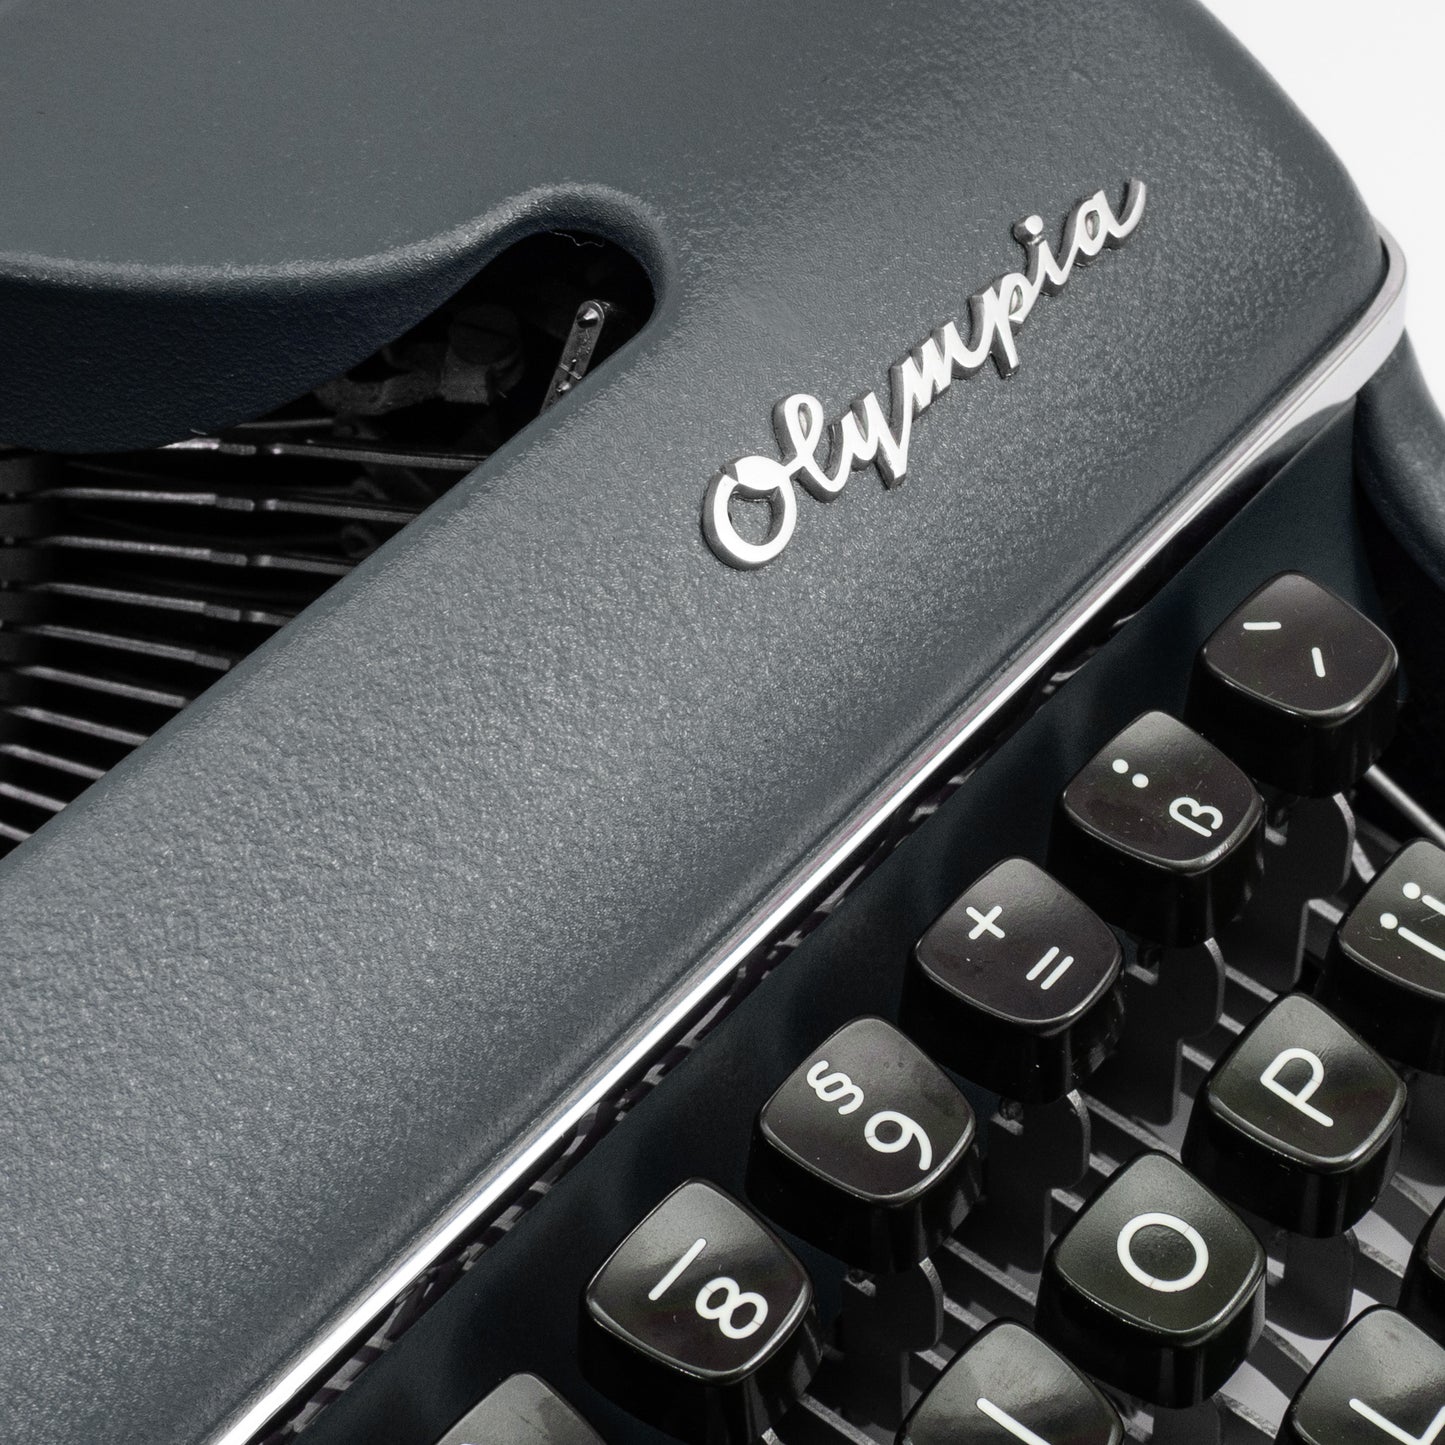 Schreibmaschine Olympia